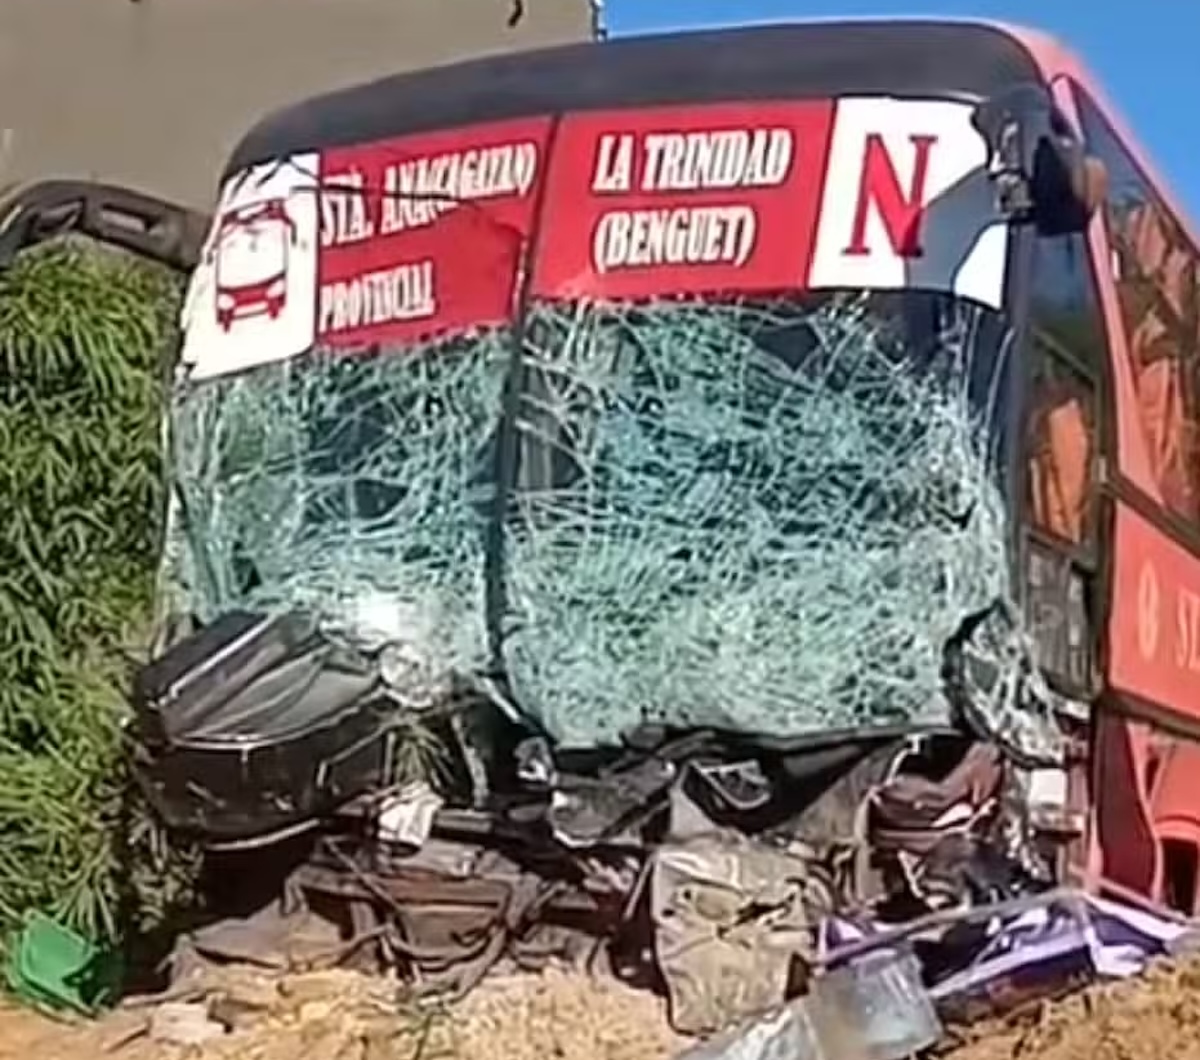 PHOTO: Passenger bus that collided with a pickup in Cagayan. STORY: 11 magkamag-anak patáy sa bangaán ng pickup, bus sa Cagayan